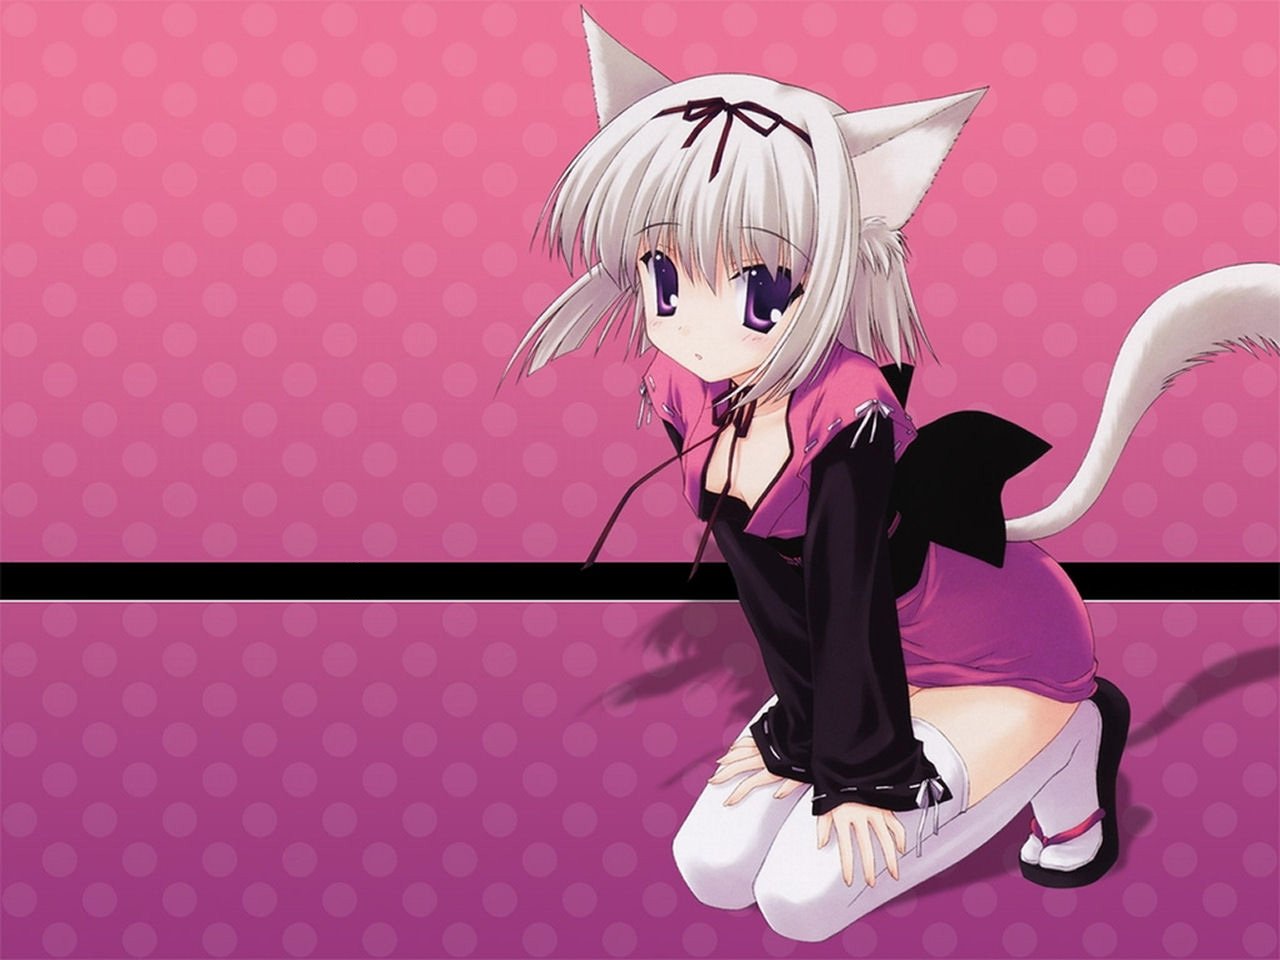 Live wallpaper Anime cat girl / download from VSThemes